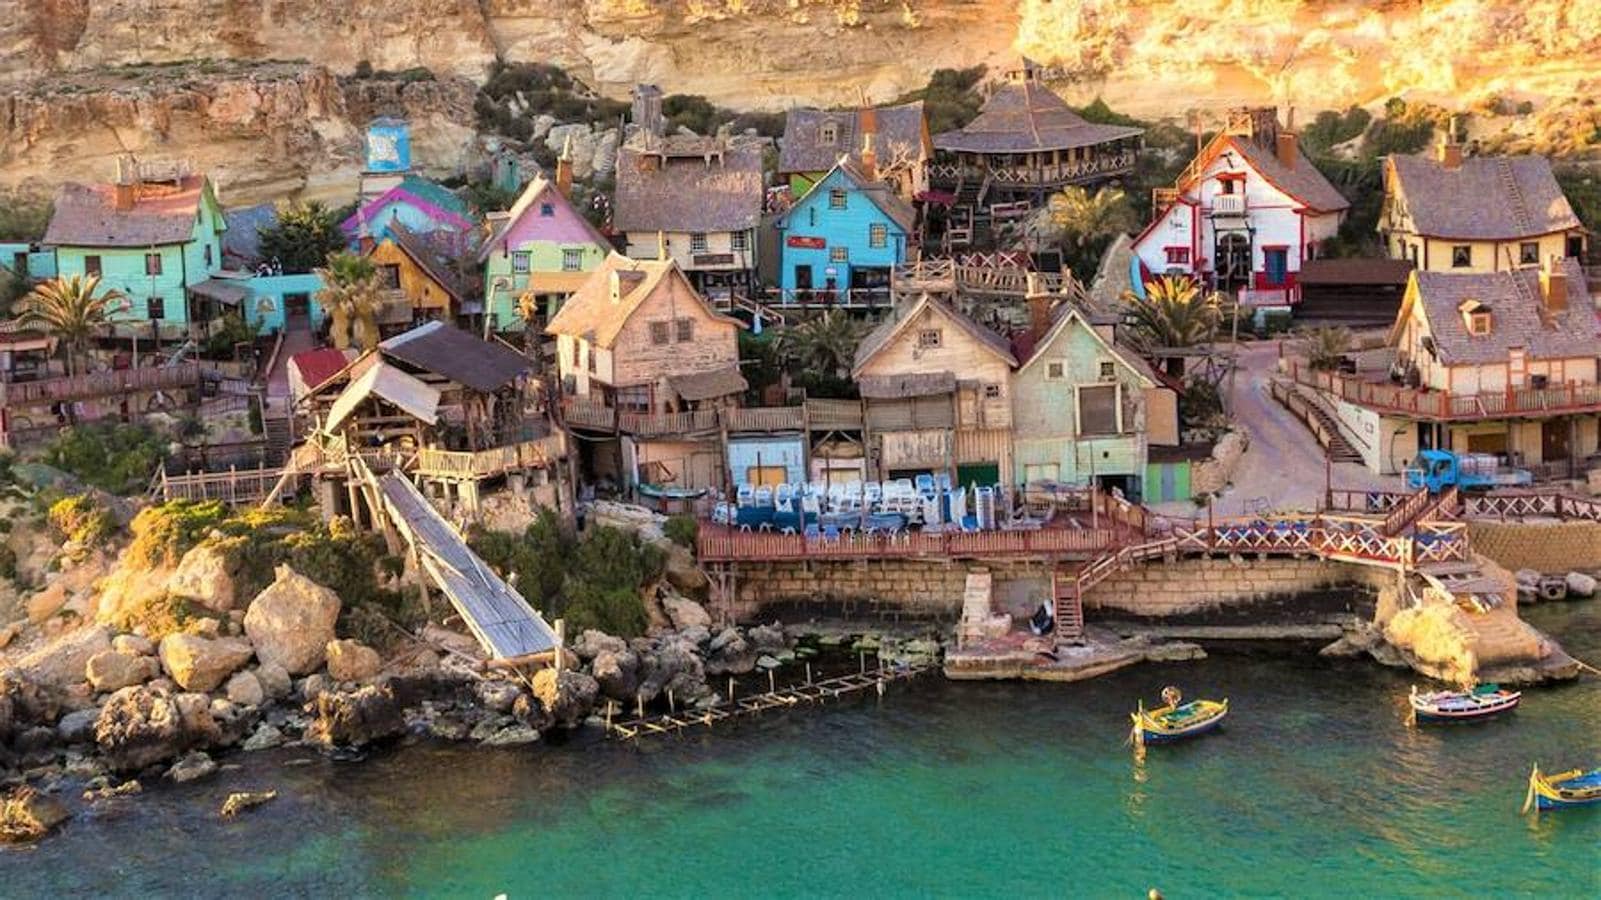 Así es Villa Popeye, el parque temático de Malta. Popeye Village está compuesto por 19 curiosas casitas de colores y en él diariamente se llevan a cabo distintas actividades